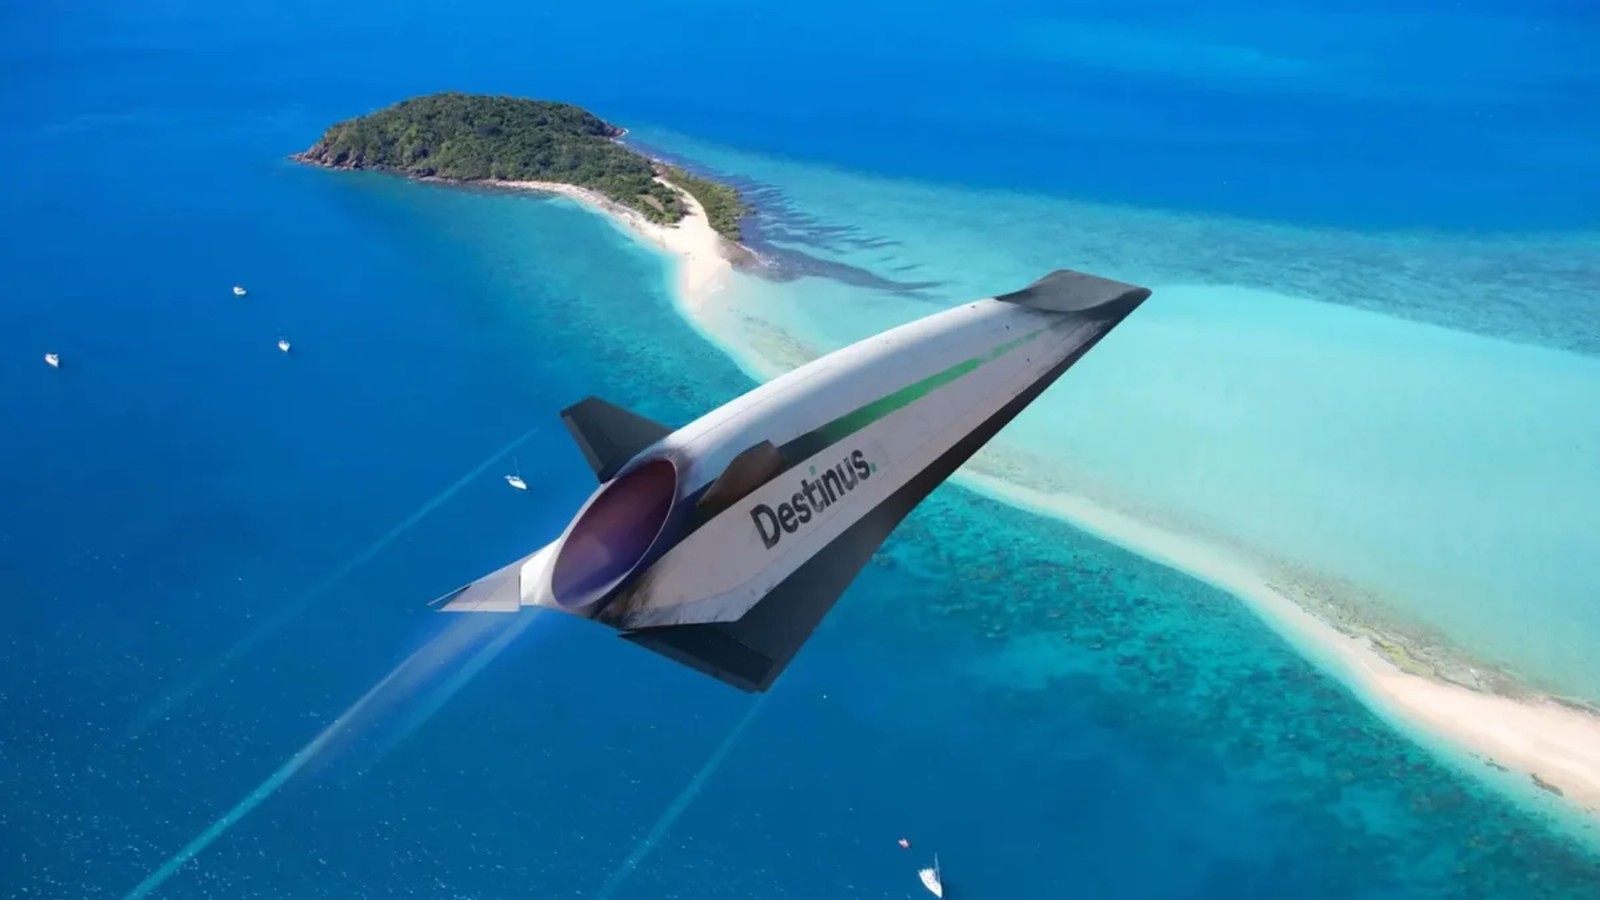 Destinus Eiger ukazuje przyszłość lotnictwa